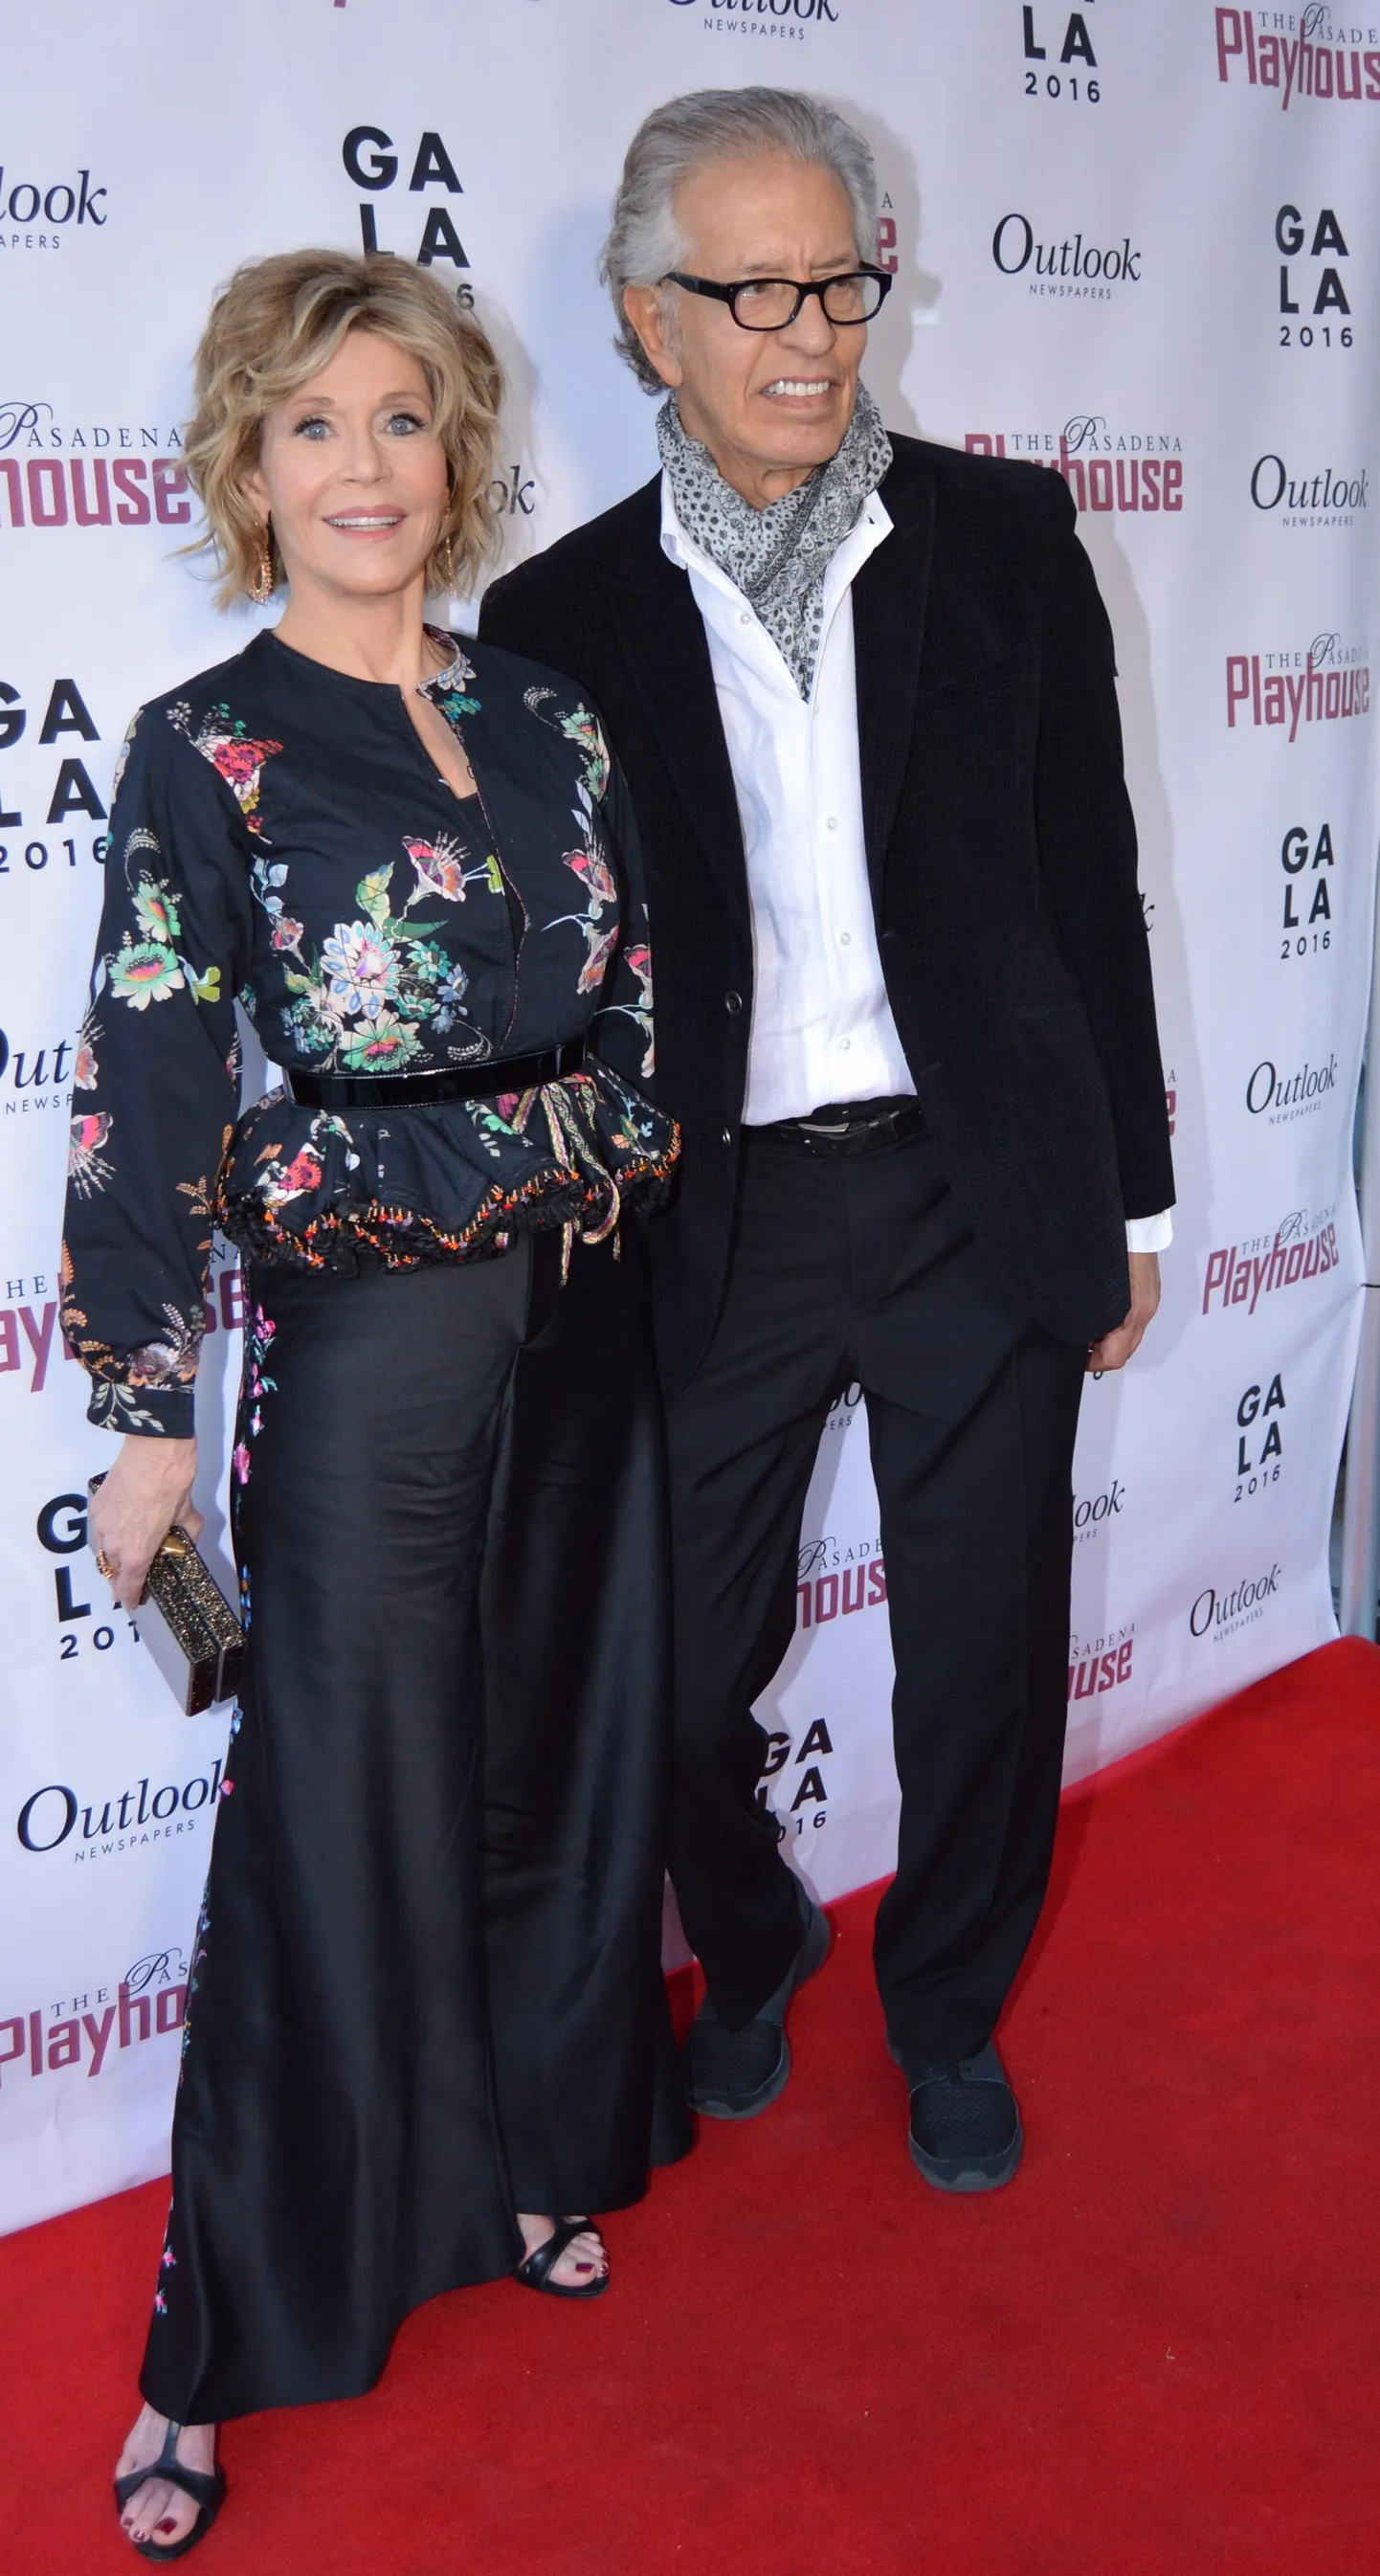 Jane Fonda ja Richard Perry külastamas koos Pasadena Playhouse Galat 2016.aastal